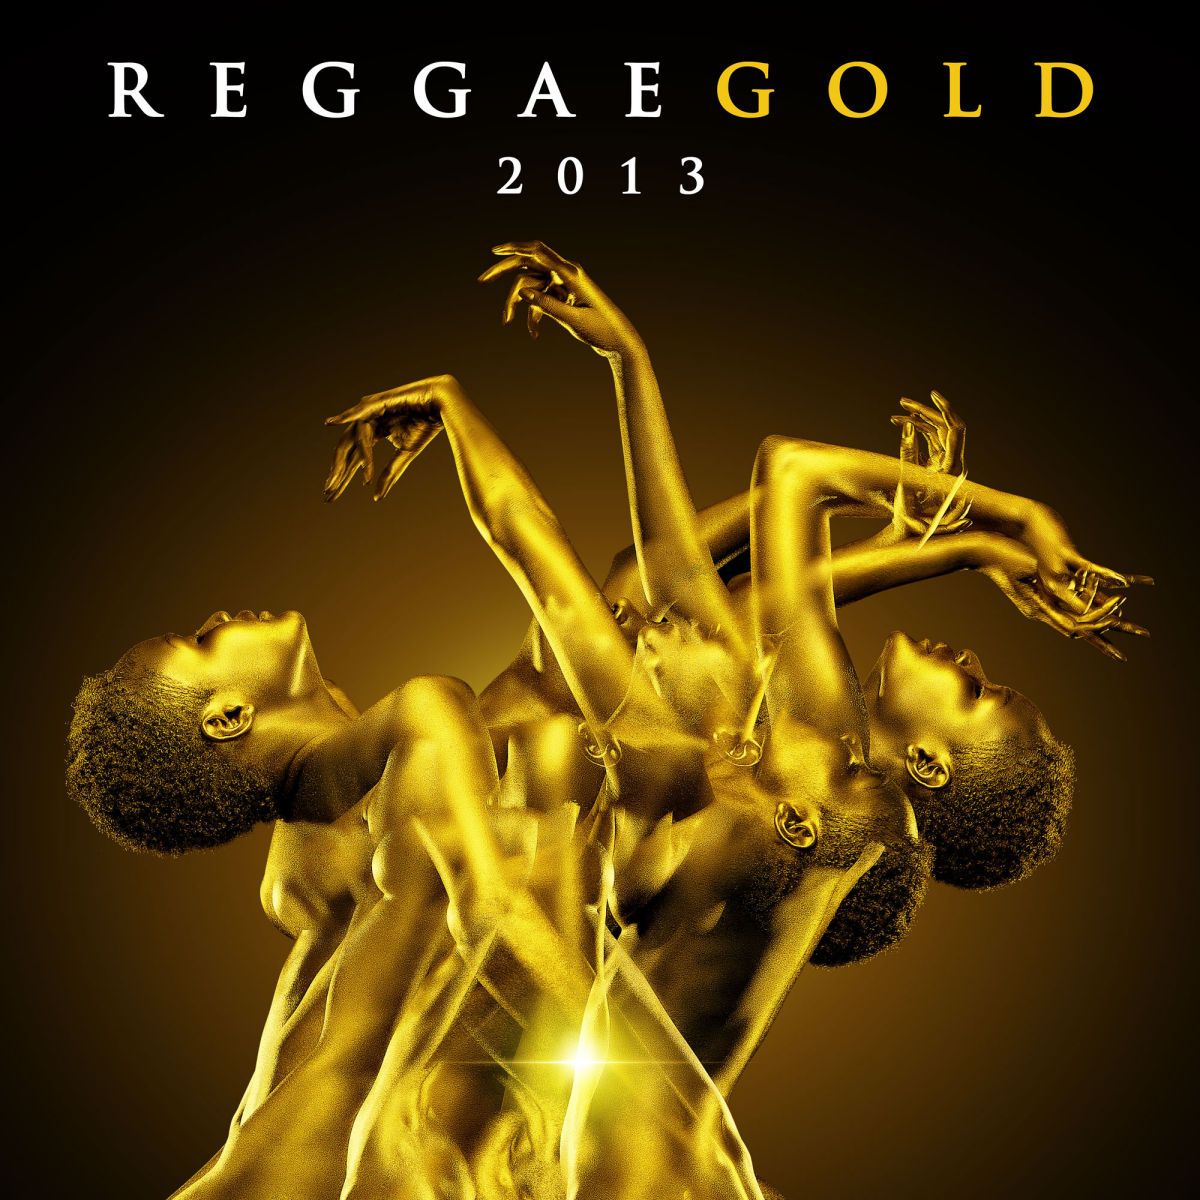 1reggae_gold_album_cover_2013_vp